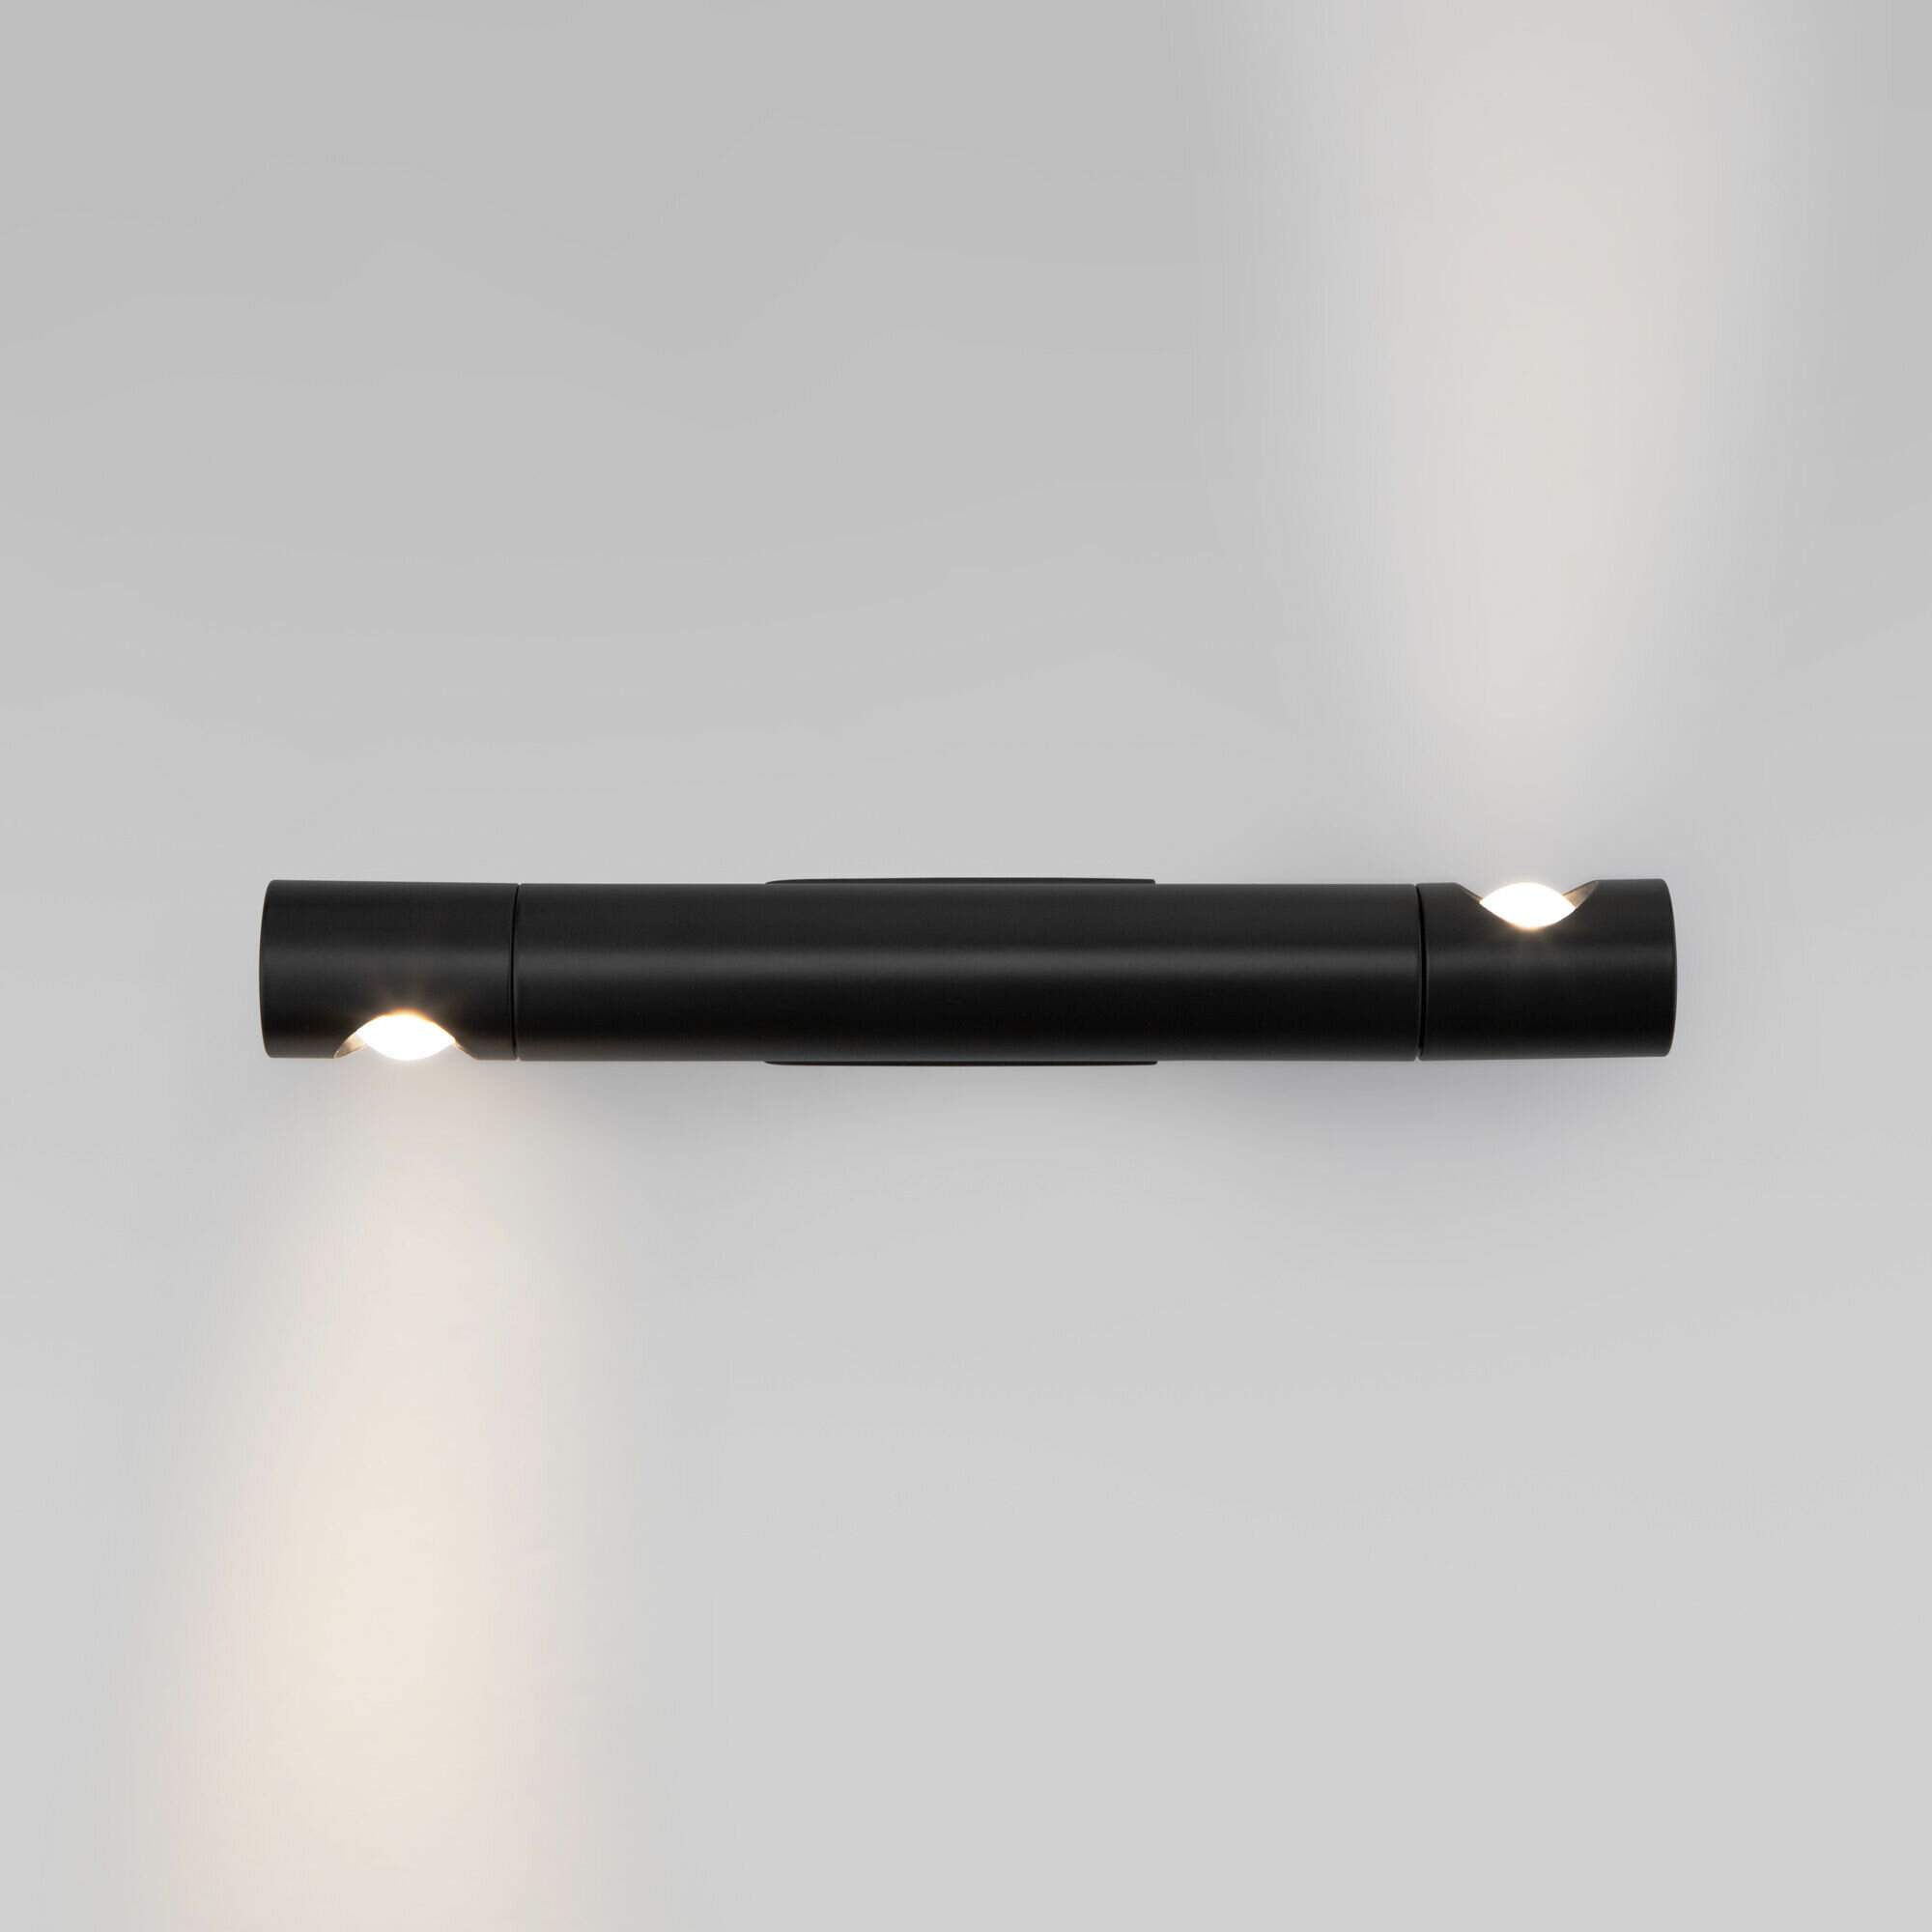 Спот / Настенный светильник Eurosvet Tybee 40161, LED, 2x2W, 230V, 6000K, черный, IP20